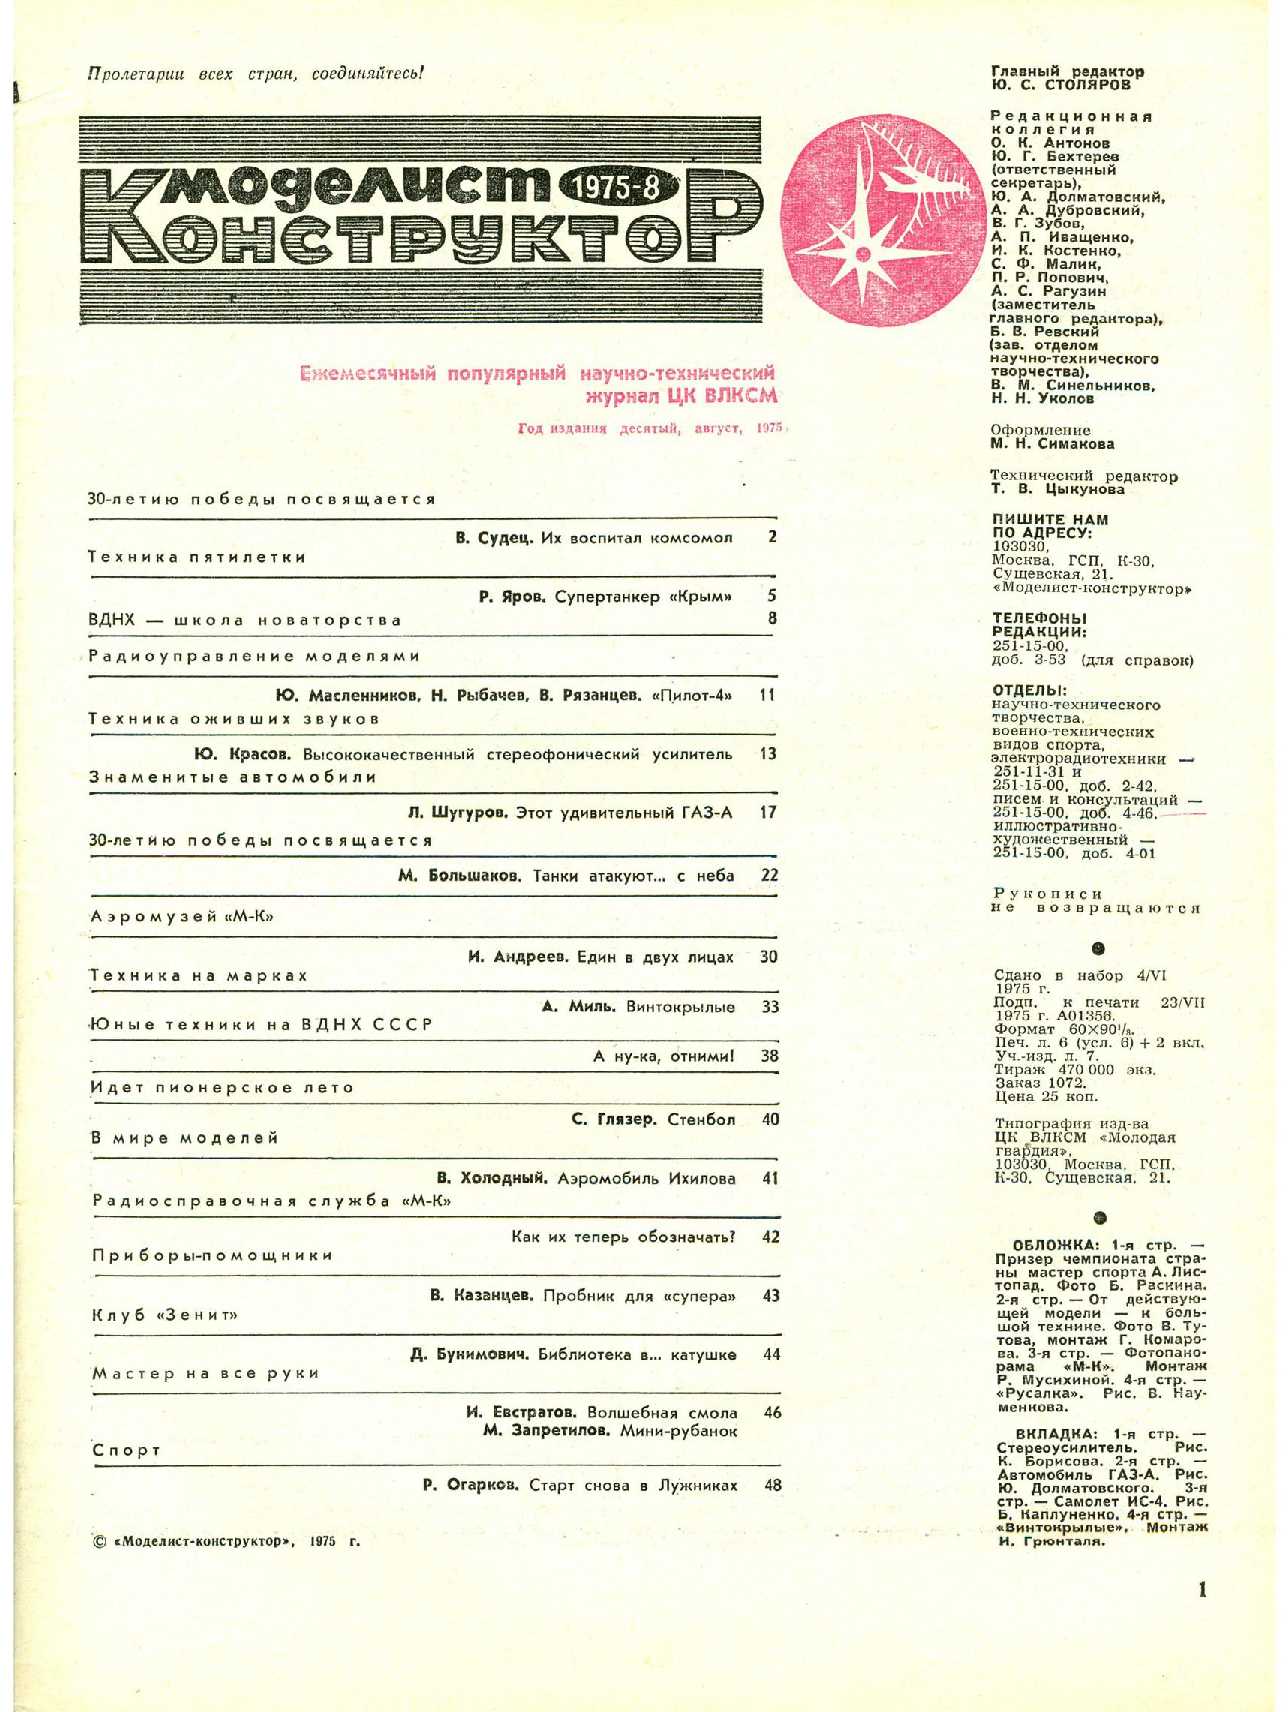 МК 8, 1975, 1 c.